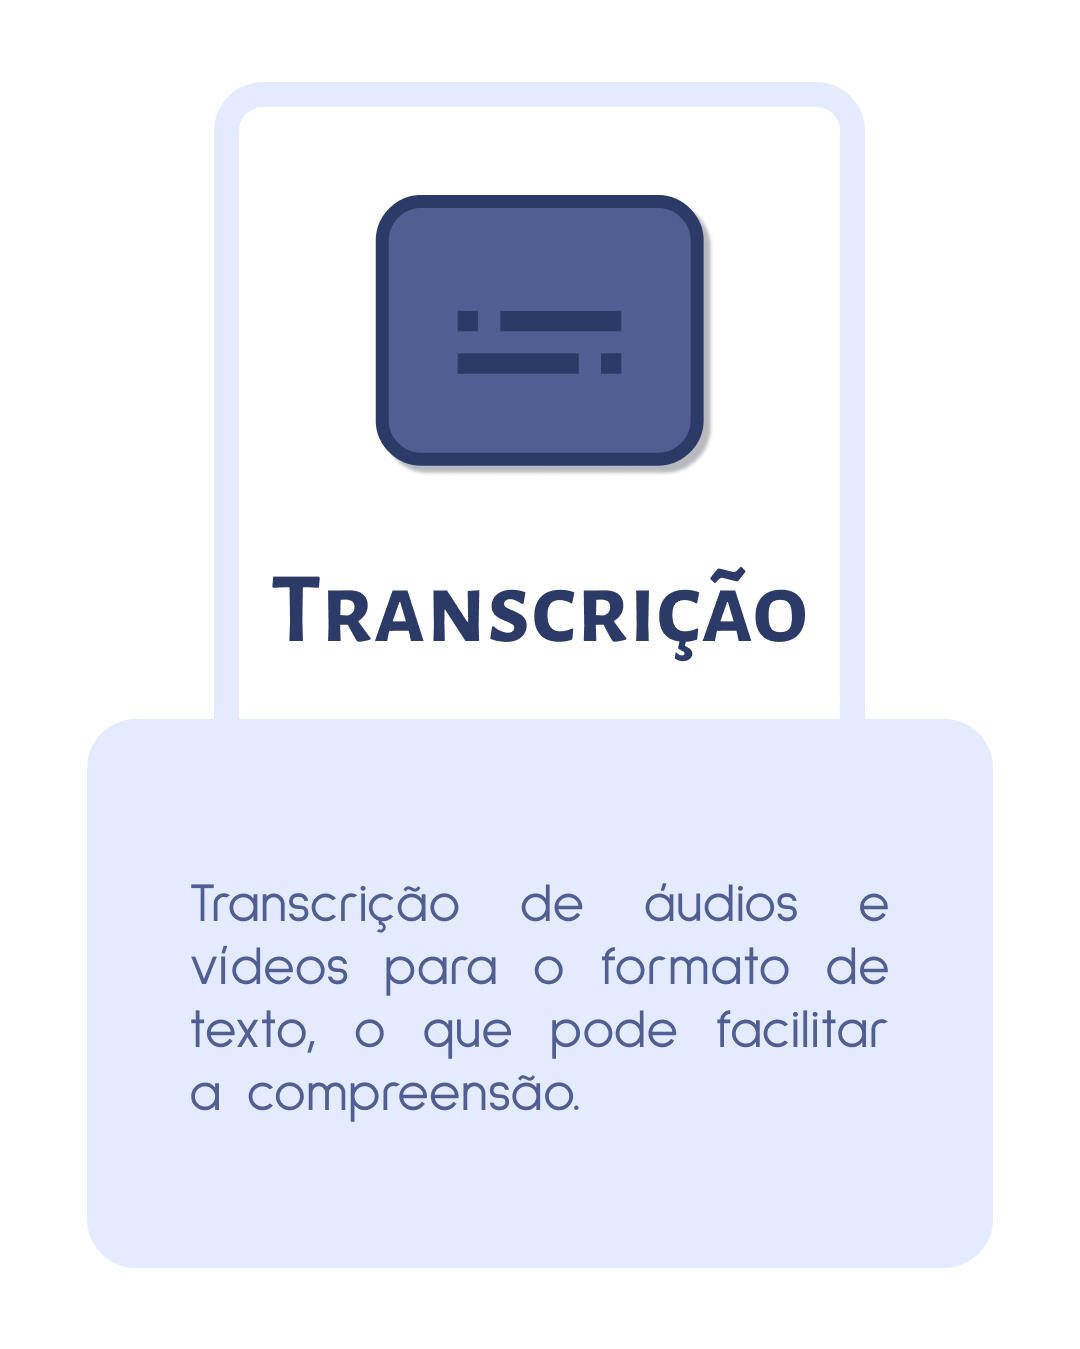 Transcrição de áudios e vídeos para o formato de texto, o que pode facilitar a compreensão.